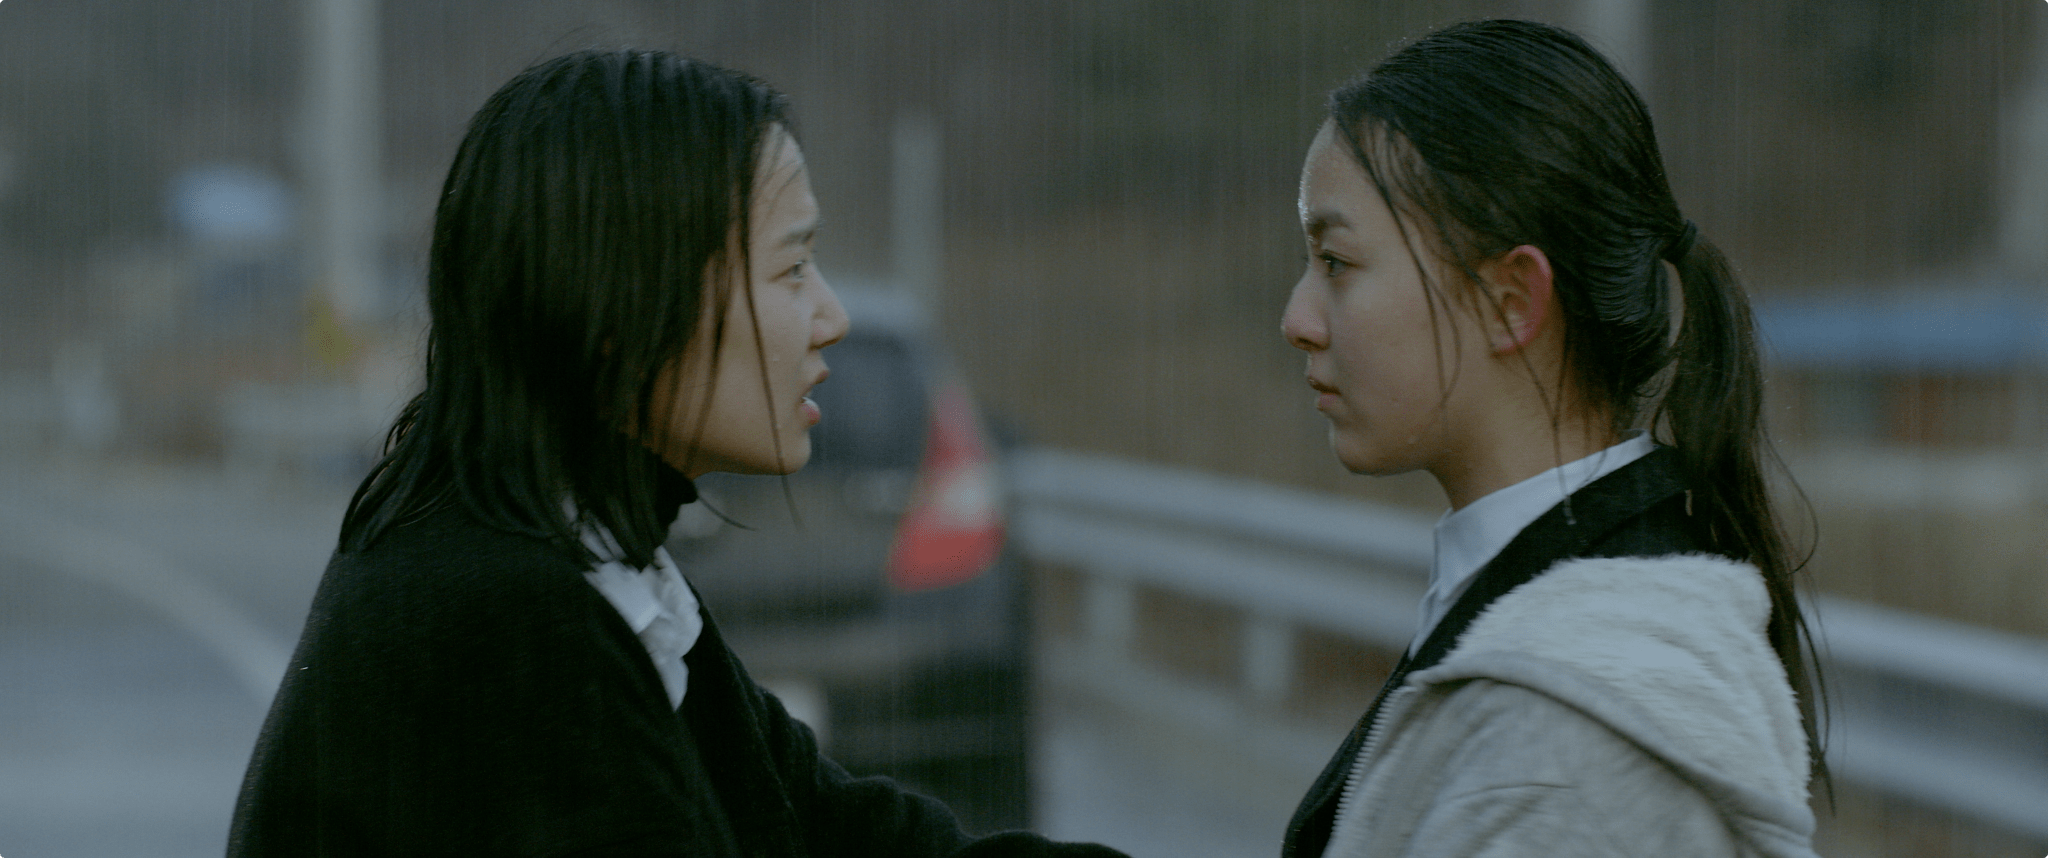 Film Review: Black Light (2020) by Jong-dae